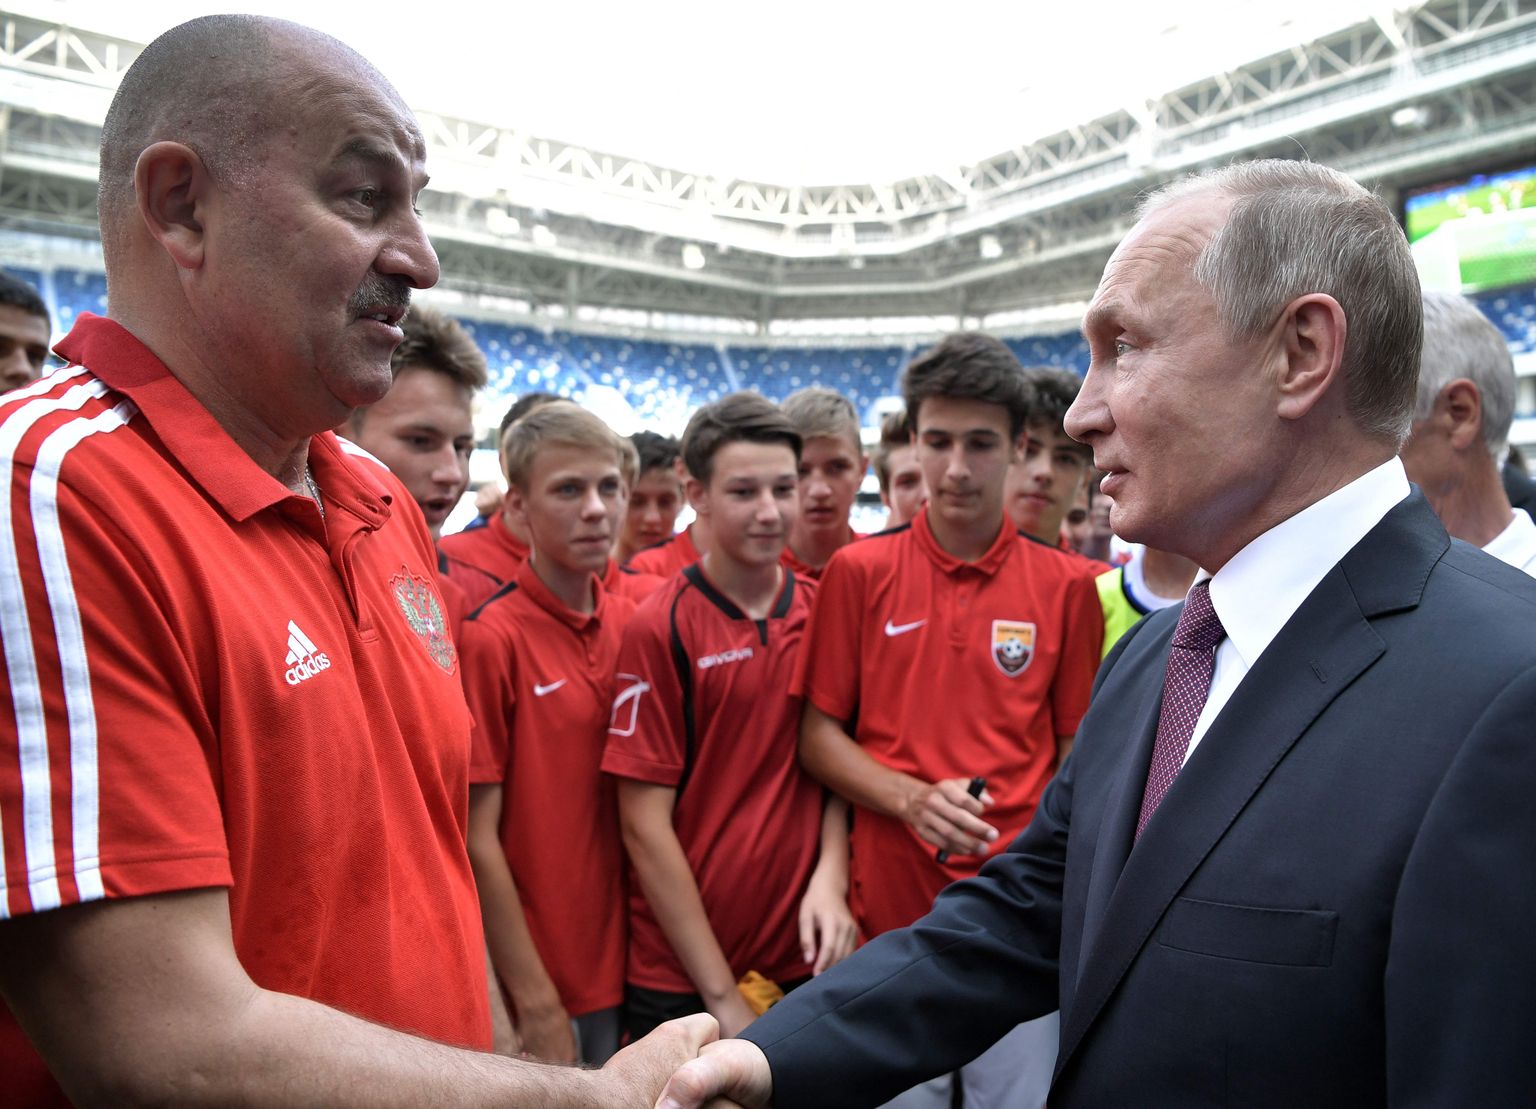 Aasta 2018. Kõik on veel hästi. Venemaa president Vladimir Putin (paremal) ja jalgpallikoondise juhendaja Stanislav Tšertšessov Kaliningradi staadionil kätt surumas.